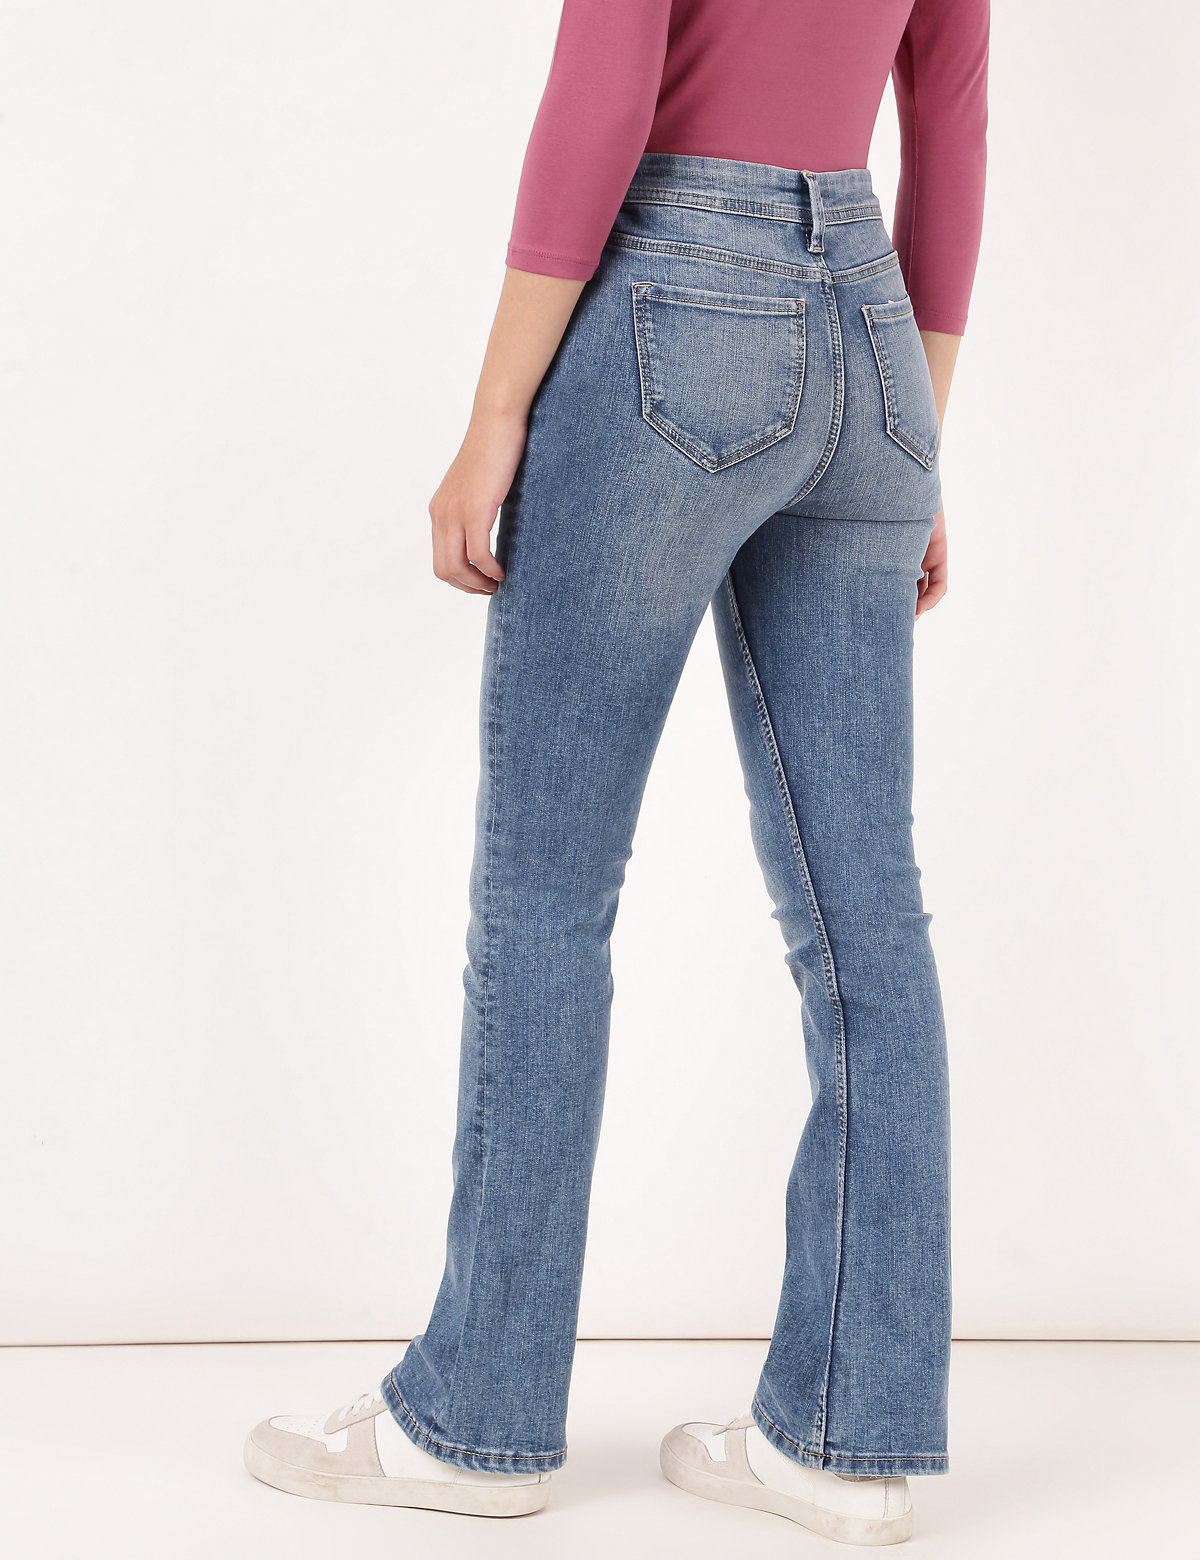 Cotton Mix Plain Slim Flared Jeans